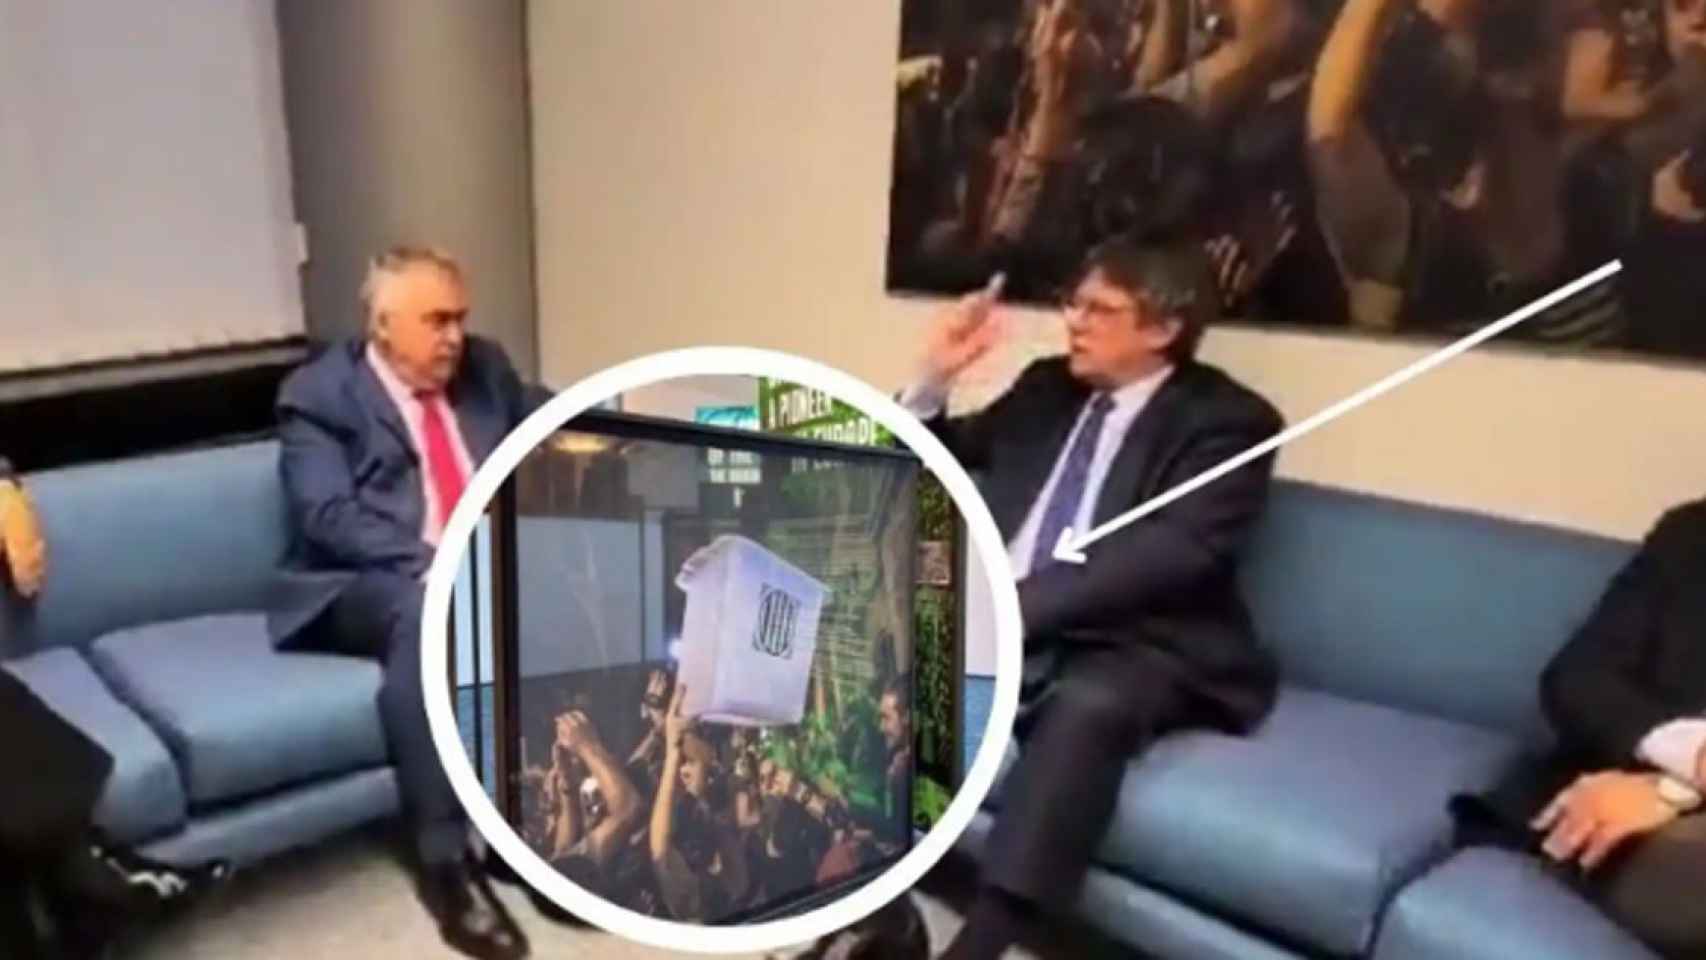 Santos Cerdán (PSOE) y Puigdemont (Junts), reunidos ante una foto de una urna del referéndum ilegal y unilateral de secesión del 1-O, retirada por el Parlamento europeo